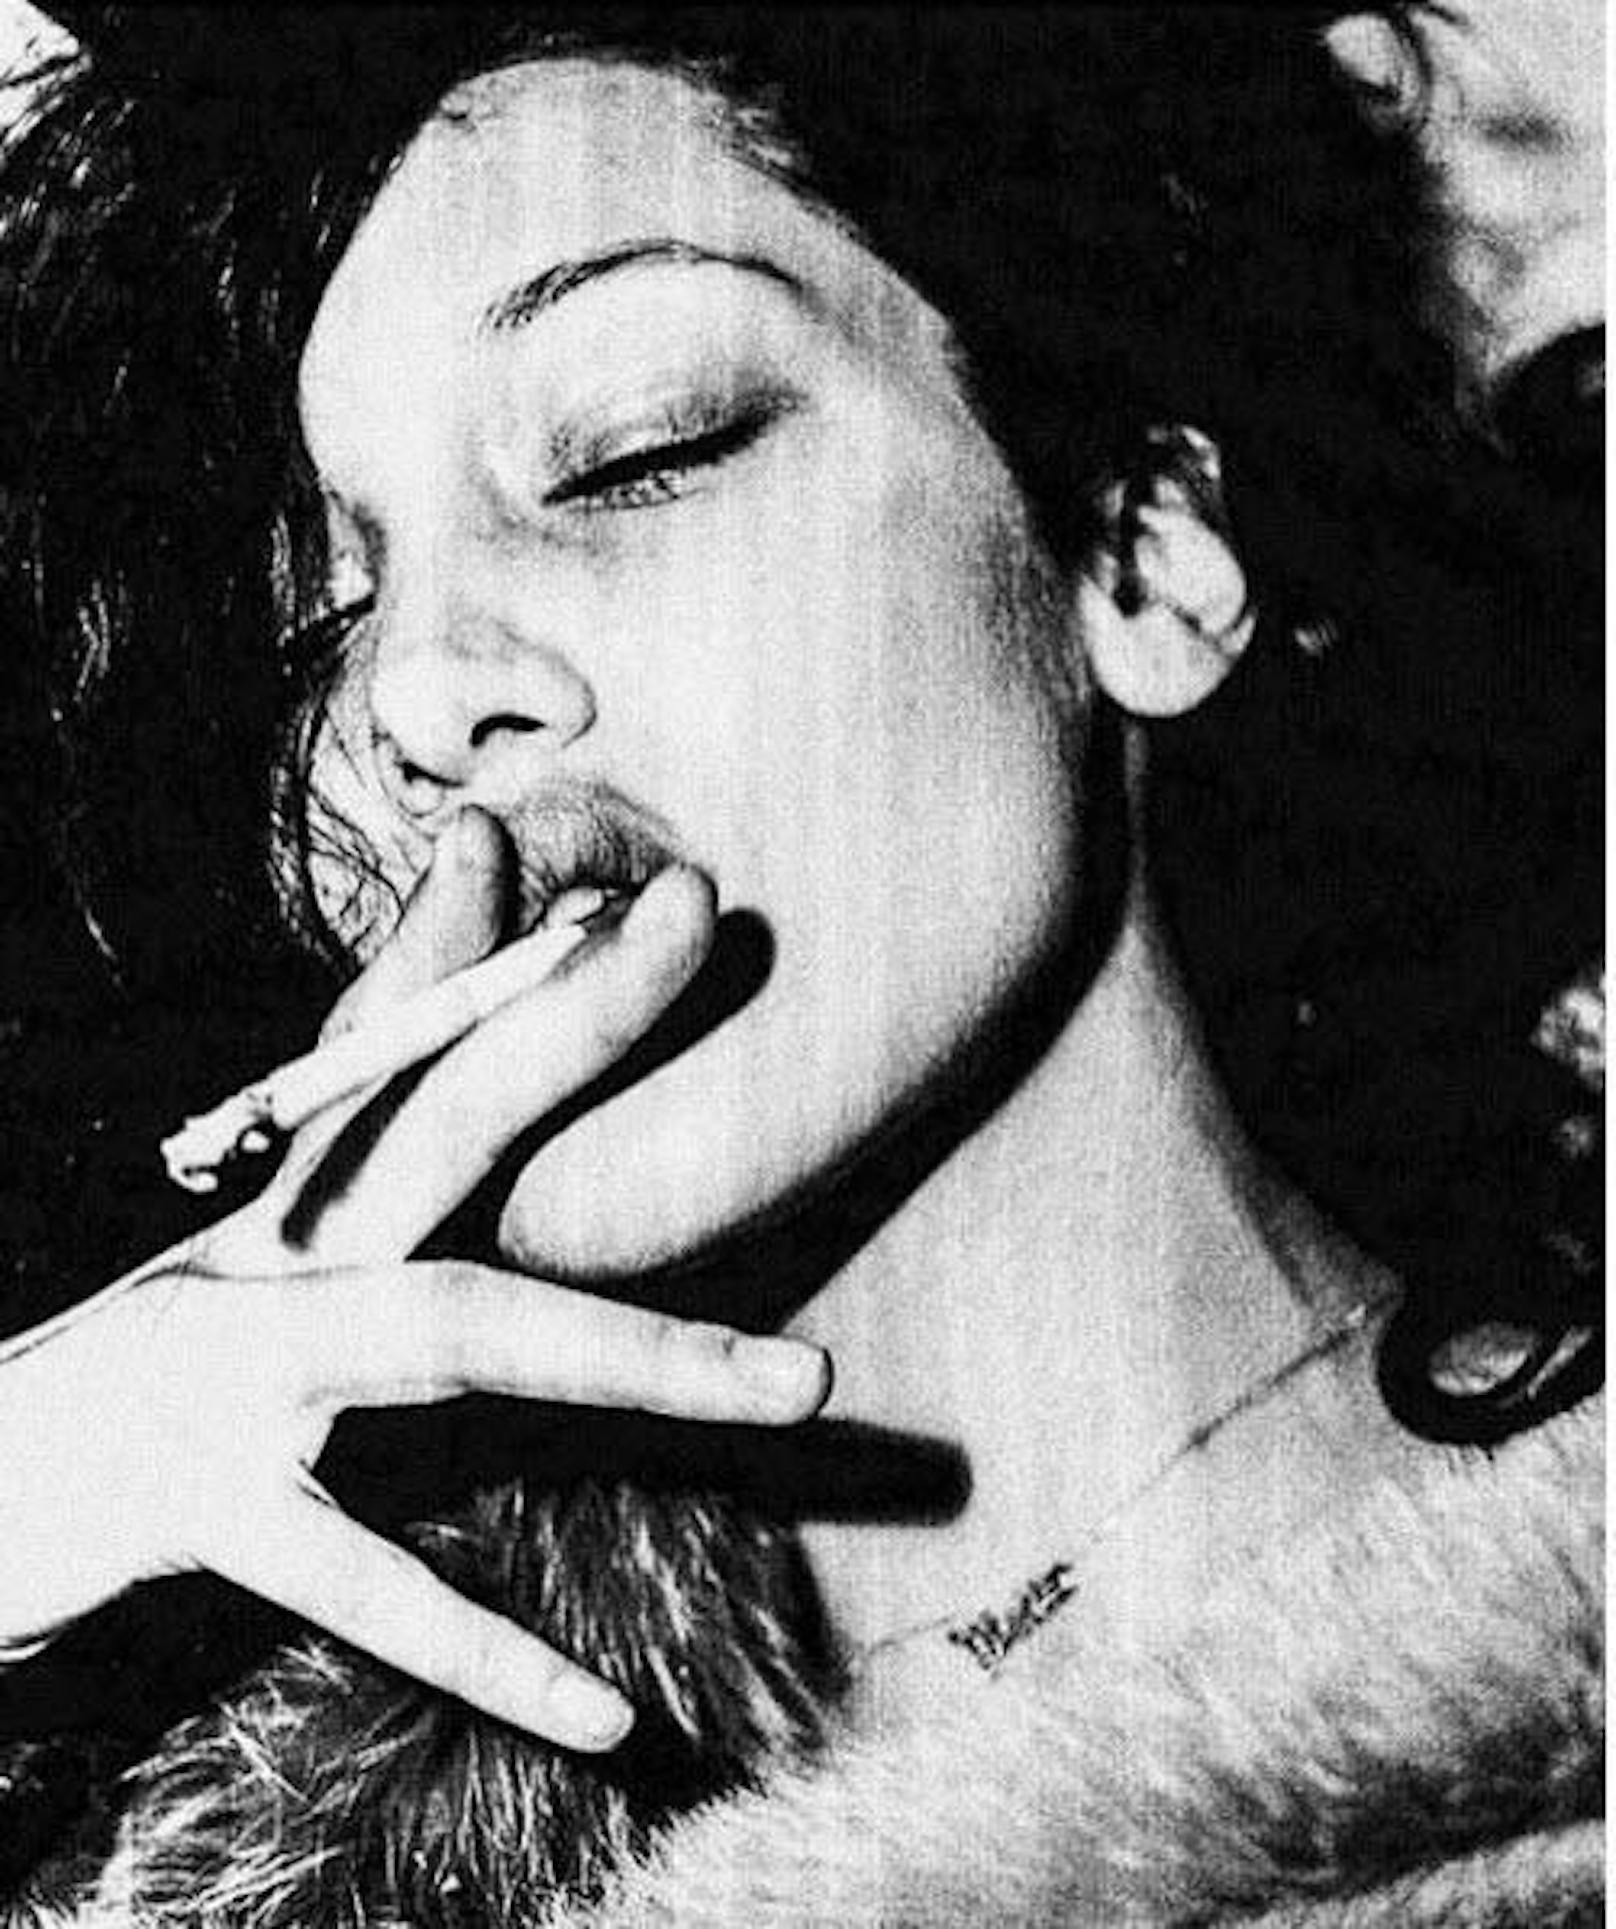 26.07.2017: Bella Hadid will mit dem Rauchen aufhören. Via Instagram schwört das 20-jährige Supermodel den Zigaretten ab.